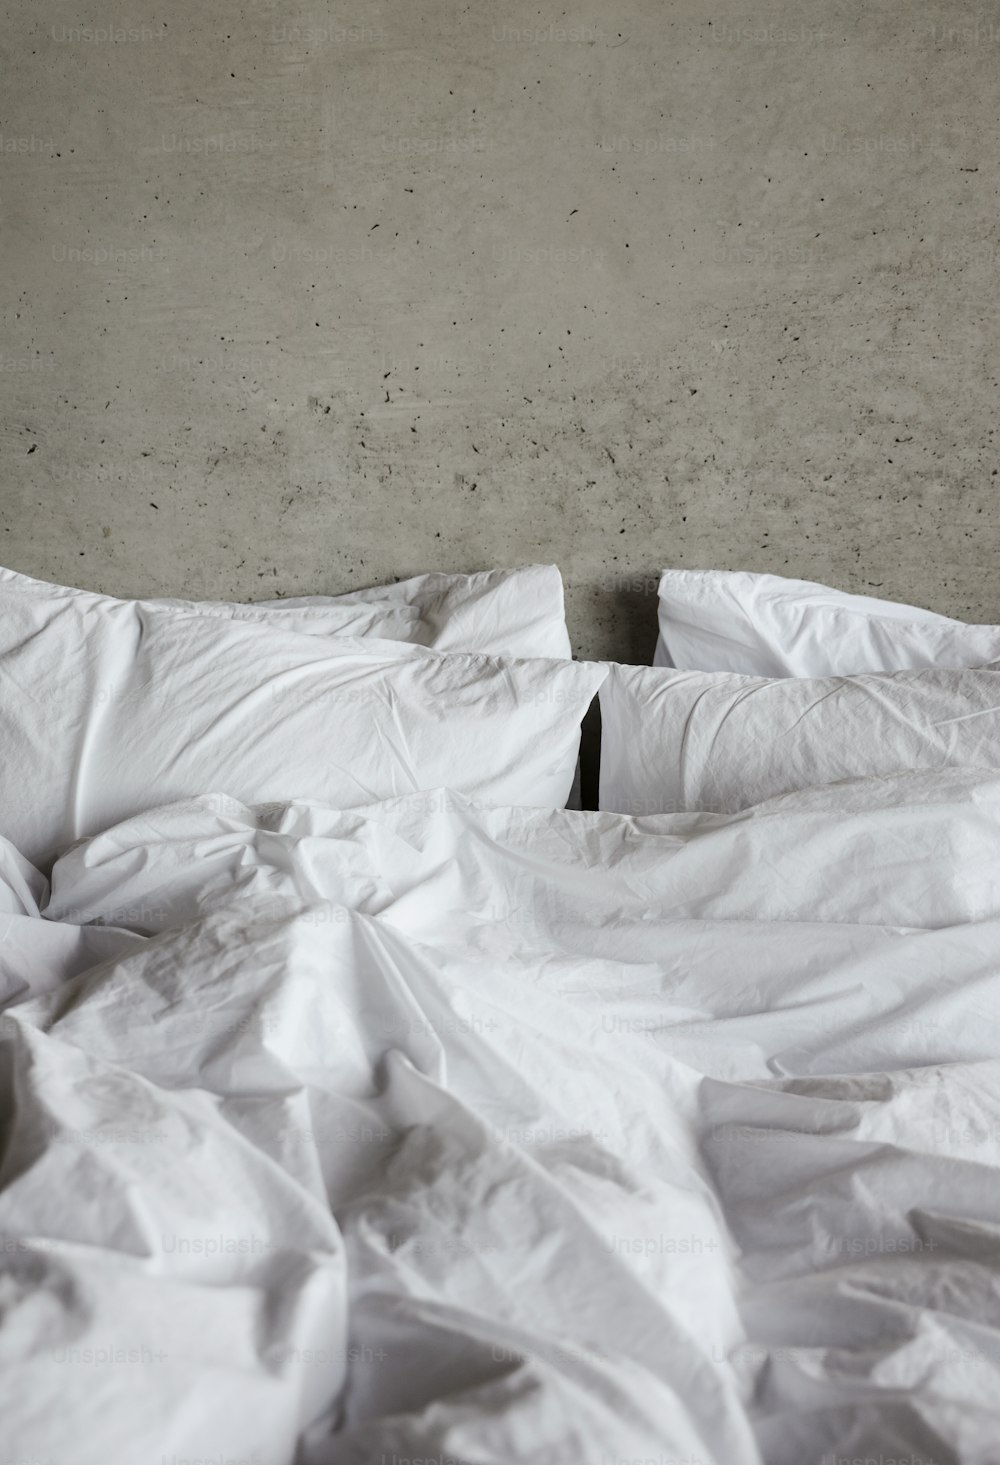 uma cama desfeita com lençóis brancos e travesseiros